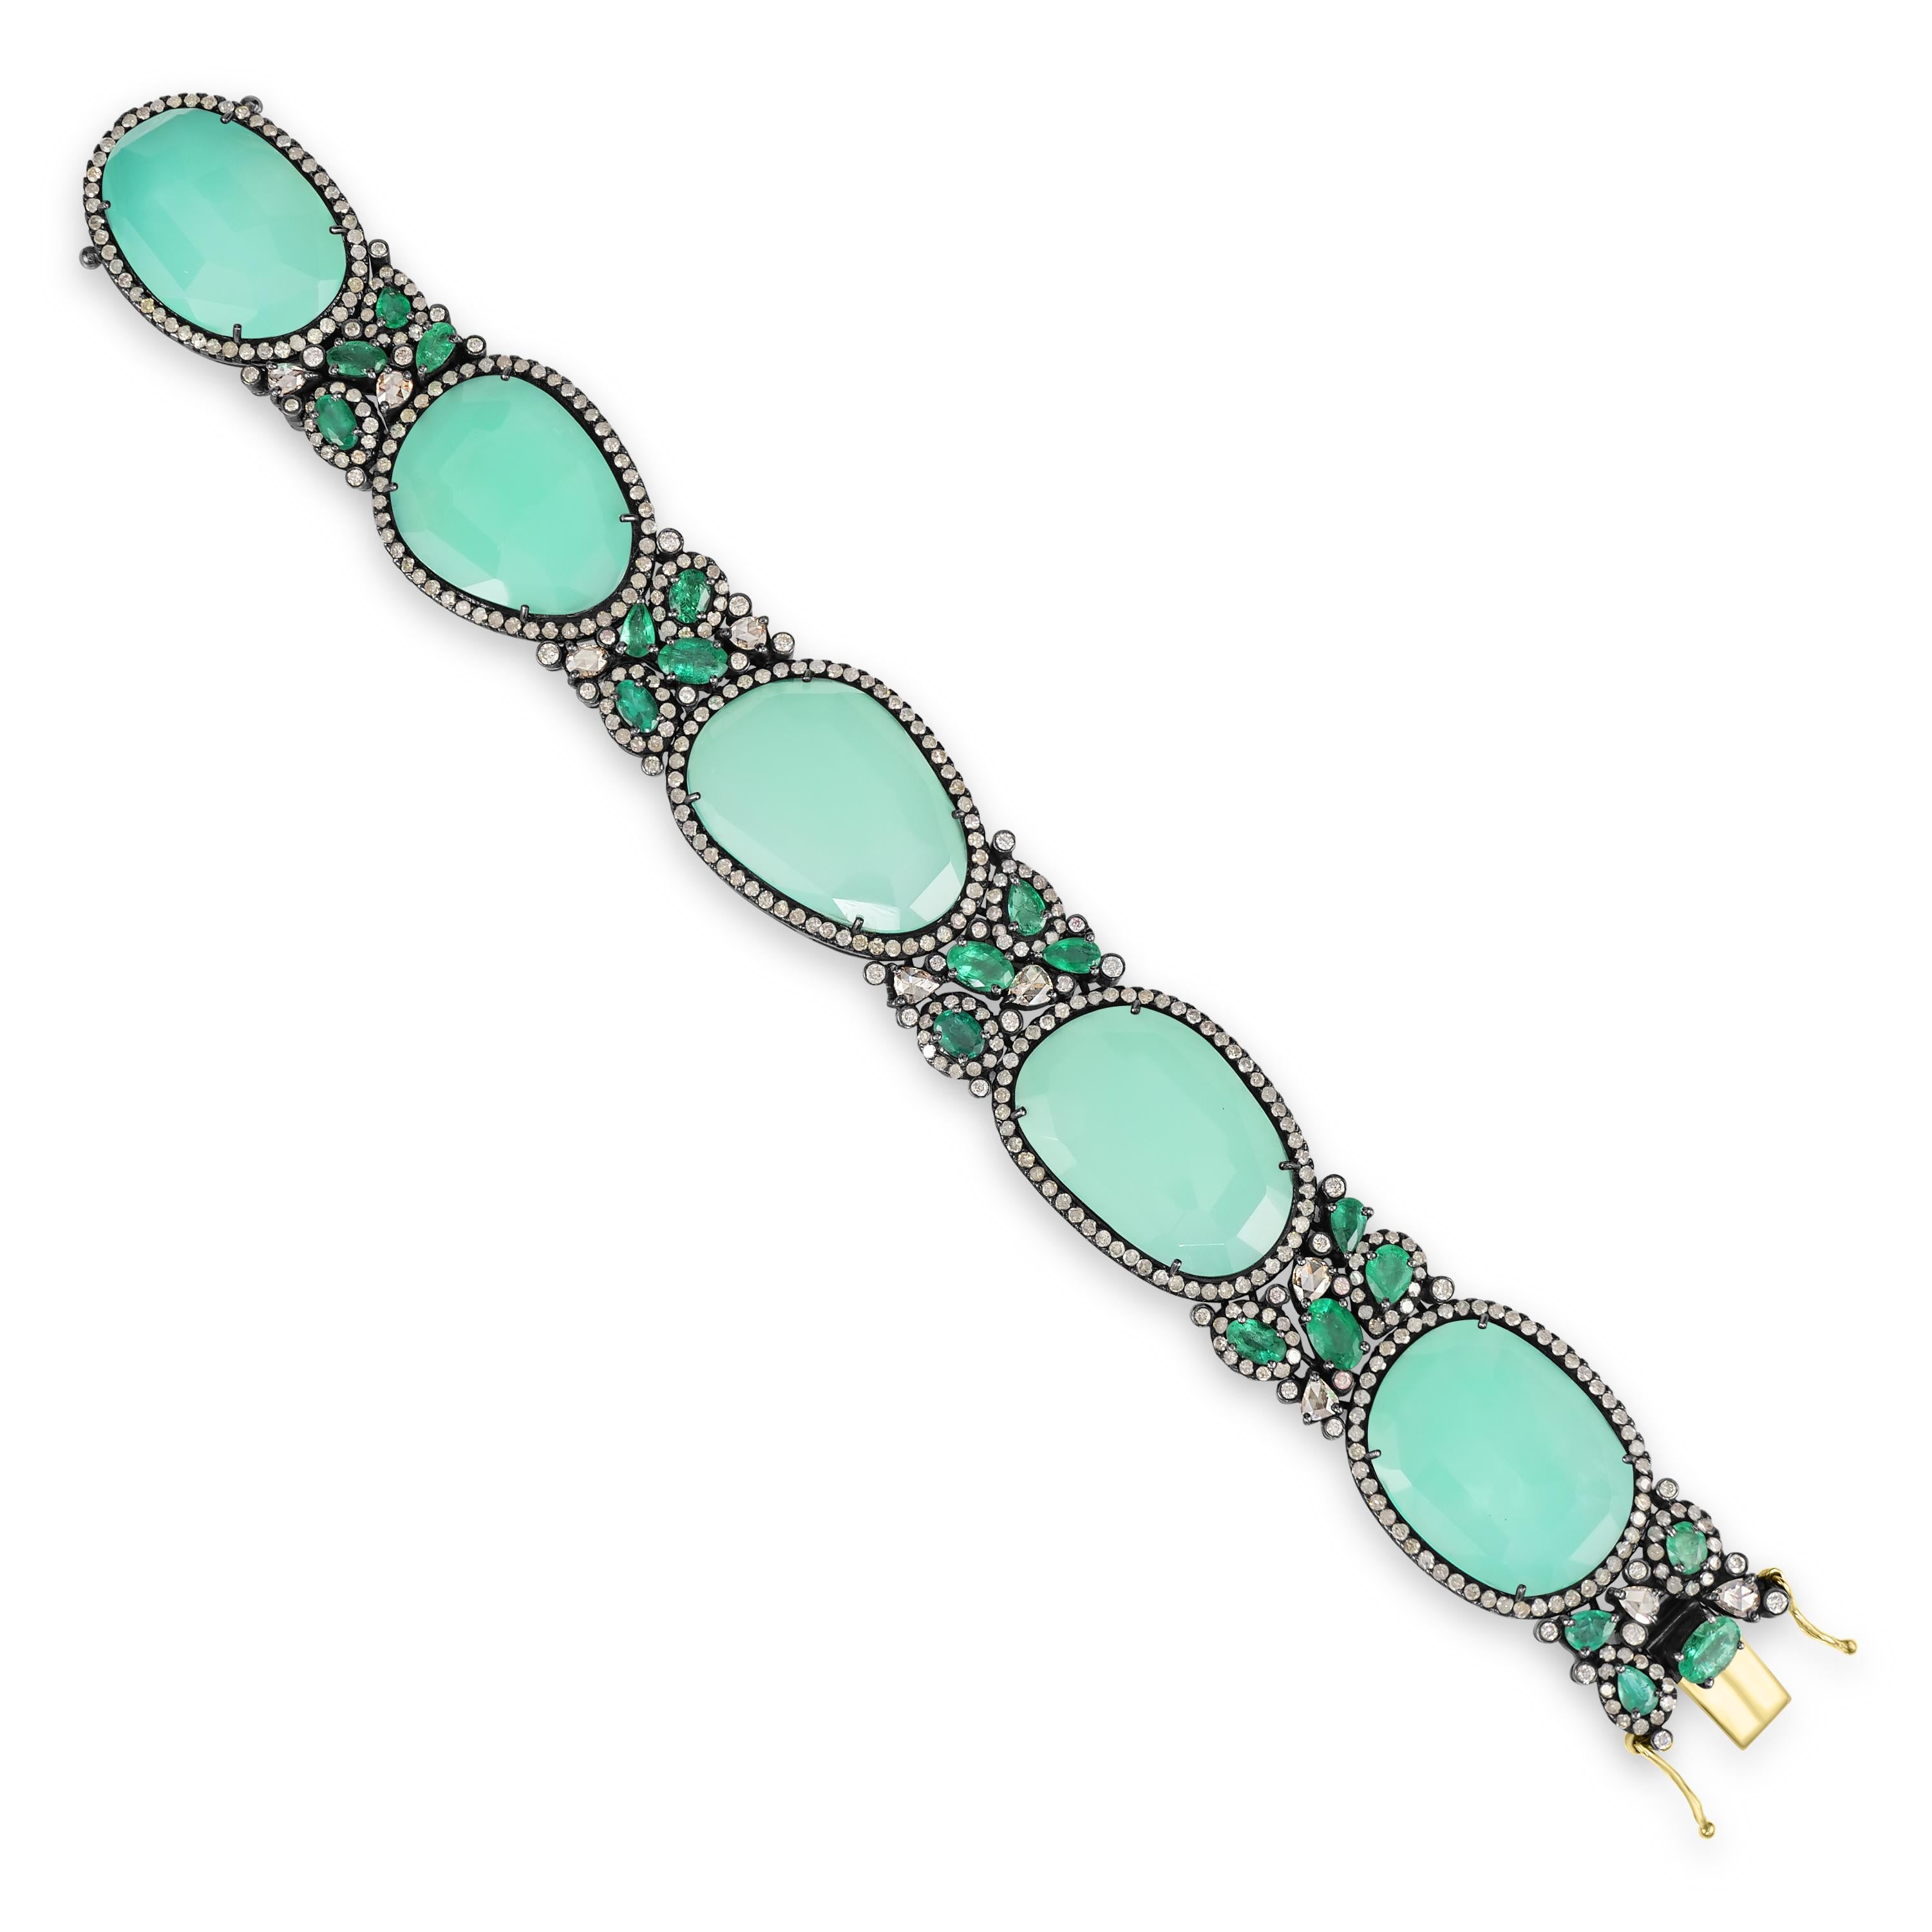 Wir stellen Ihnen unseren exquisiten viktorianischen 63 cttw. Chrysopras-, Smaragd- und Diamant-Tennisarmband, ein wahres Meisterwerk an Eleganz und Raffinesse.

Dieses mit viel Liebe zum Detail gefertigte Armband zeigt fünf faszinierende